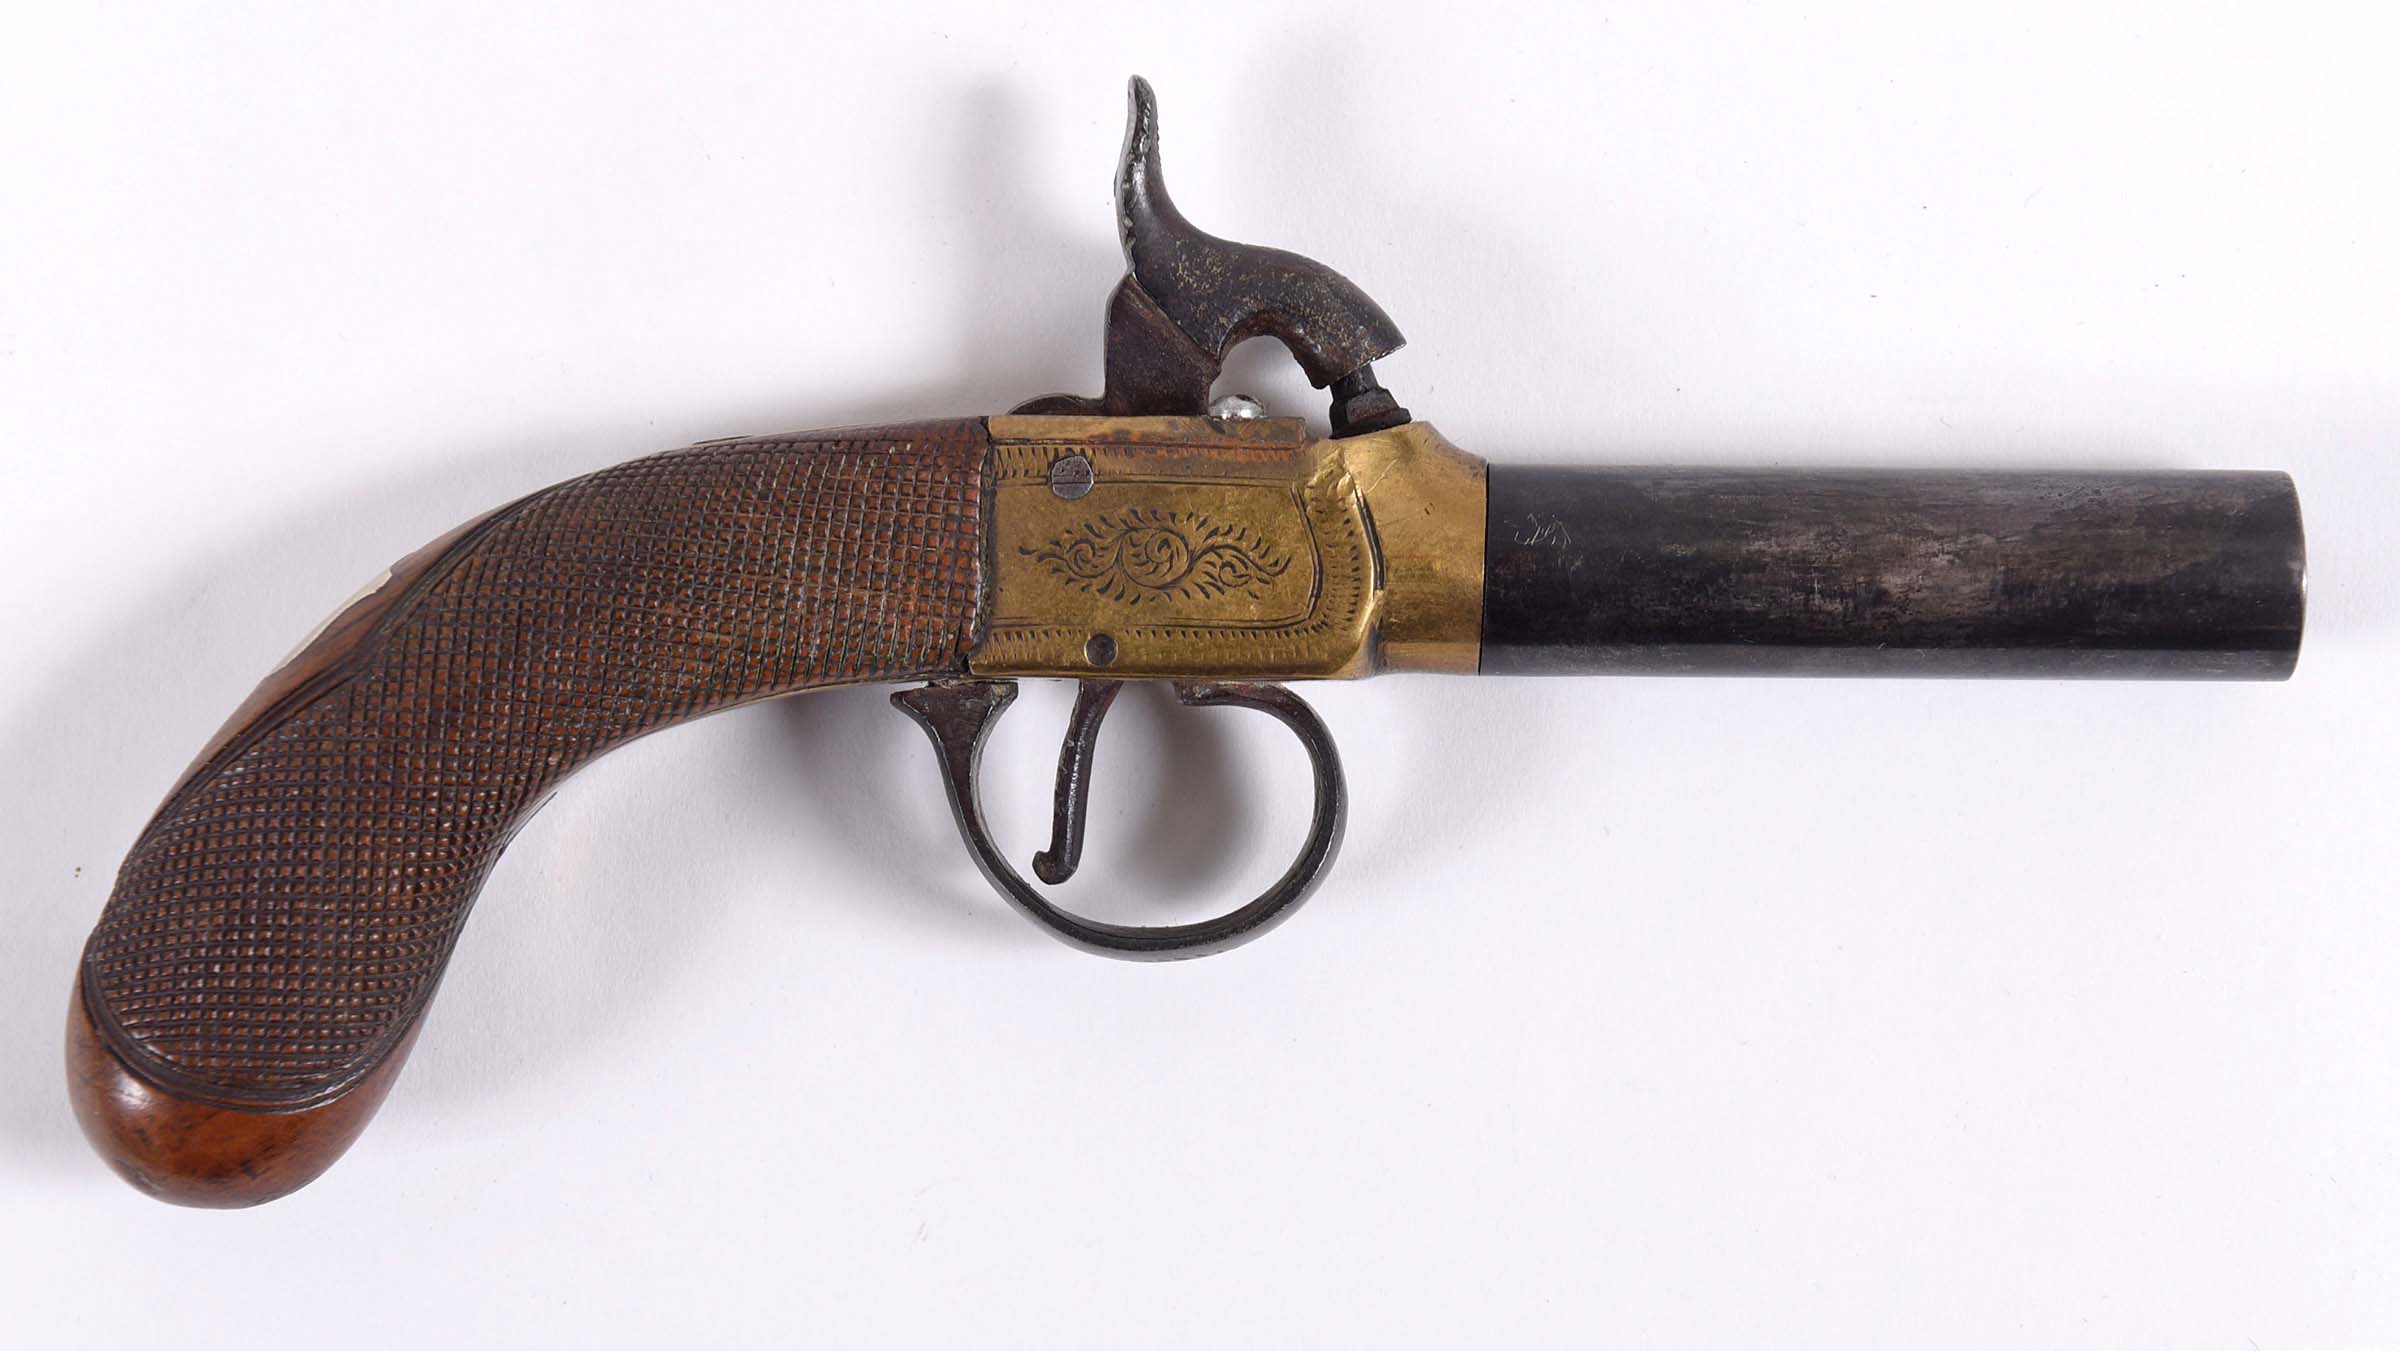 A TURN-OFF BARREL PERCUSSION POCKET PISTOL a percussion pocket pistol with turn off barrel, with